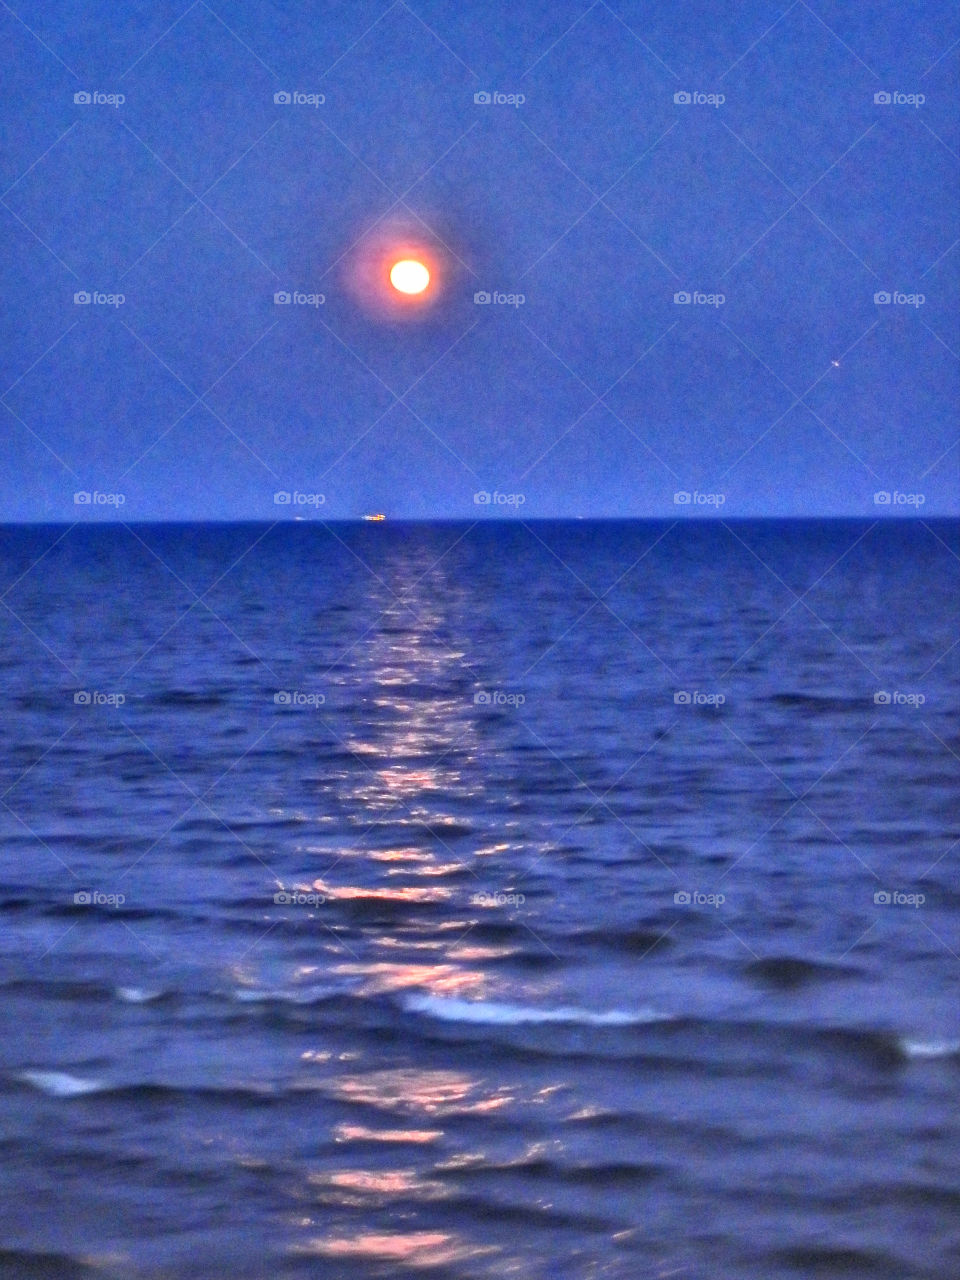 Galveston moon